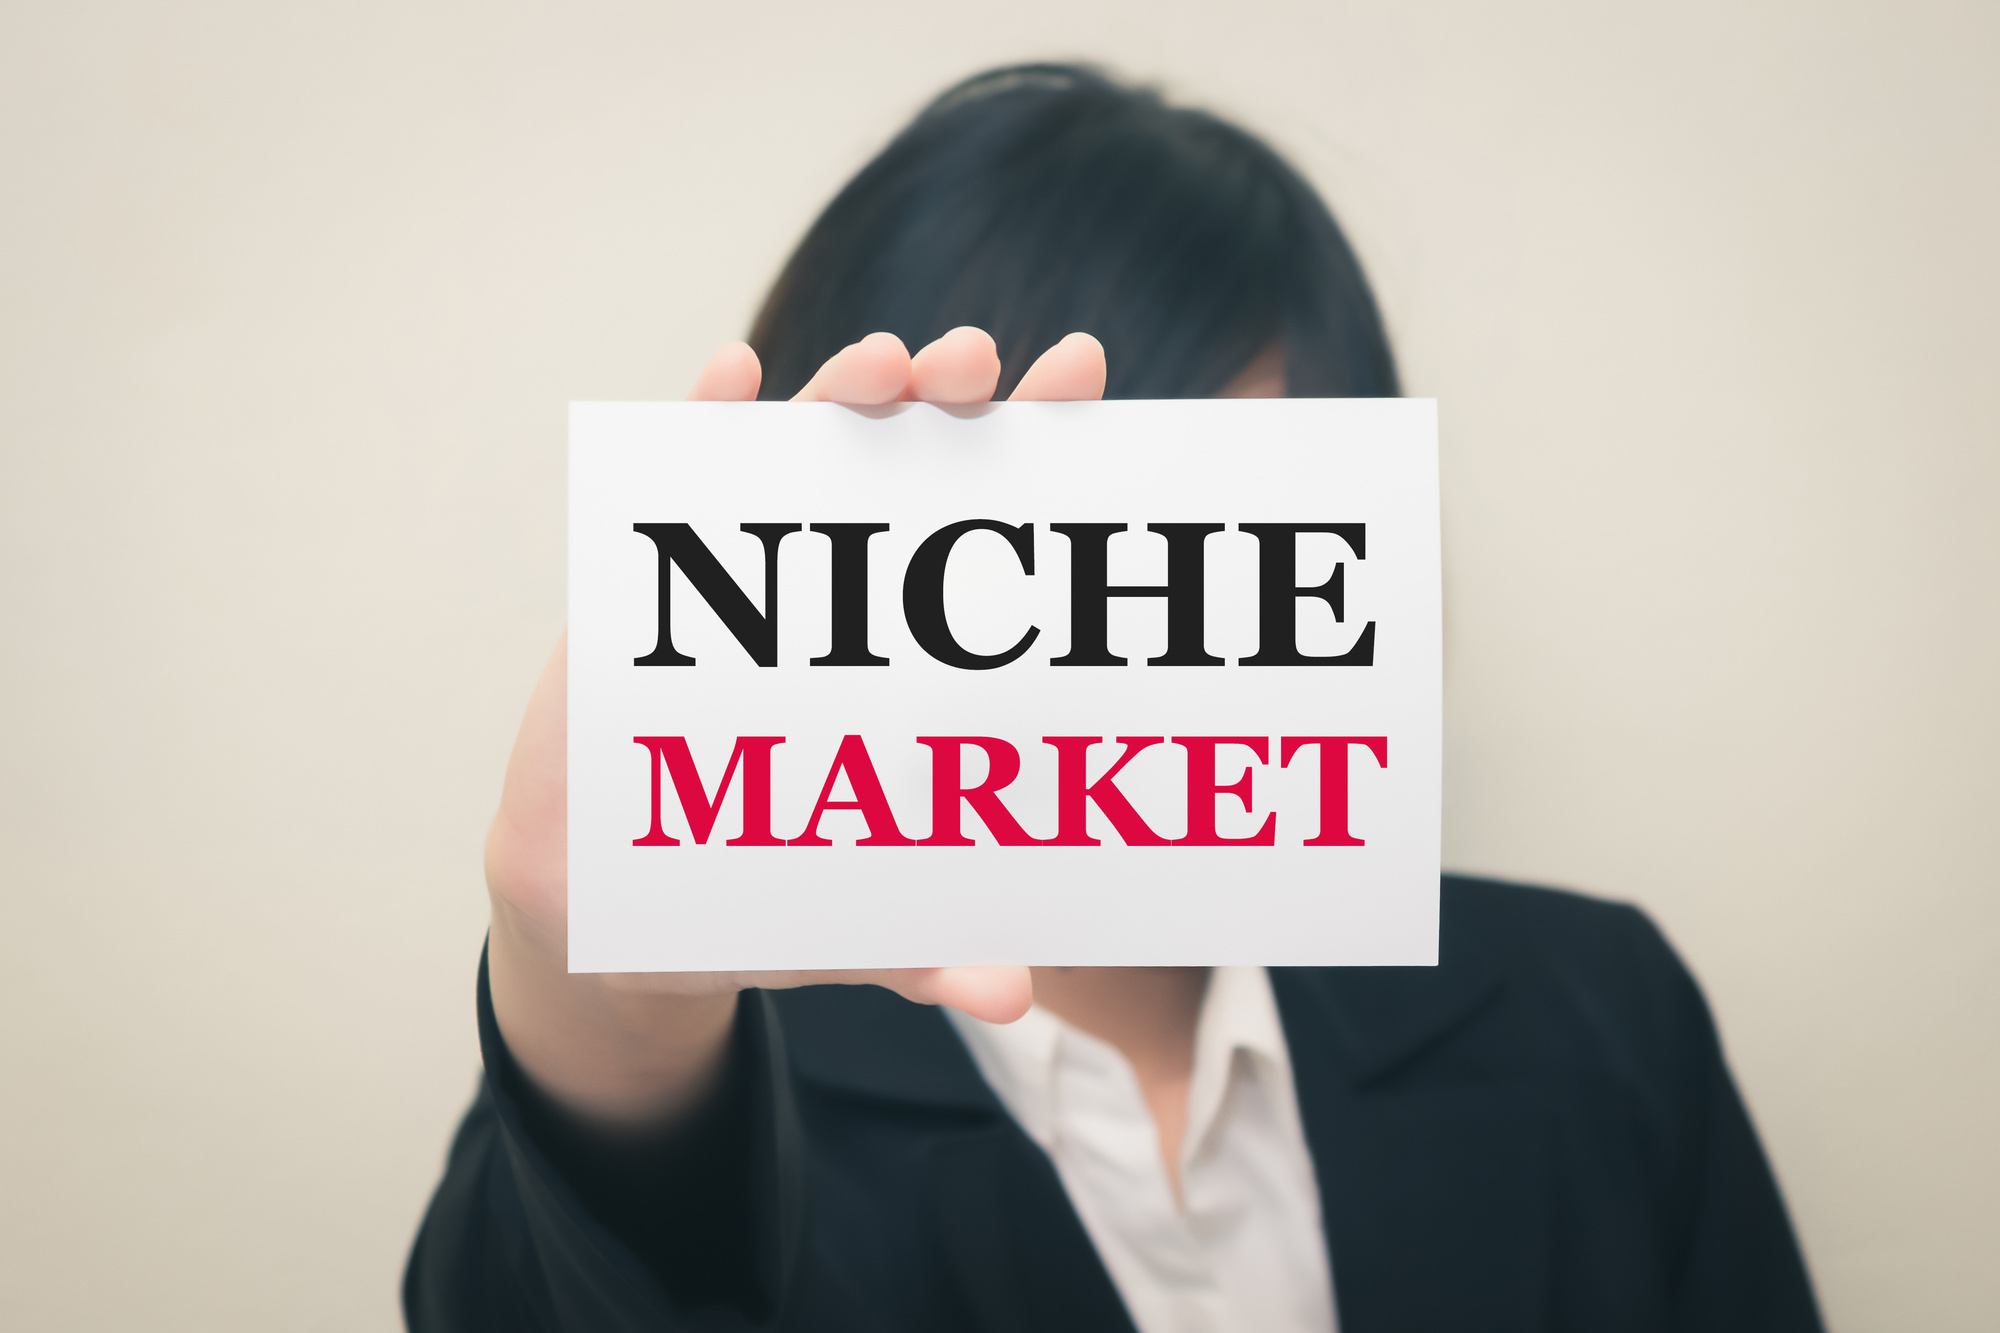 Niche Market on card